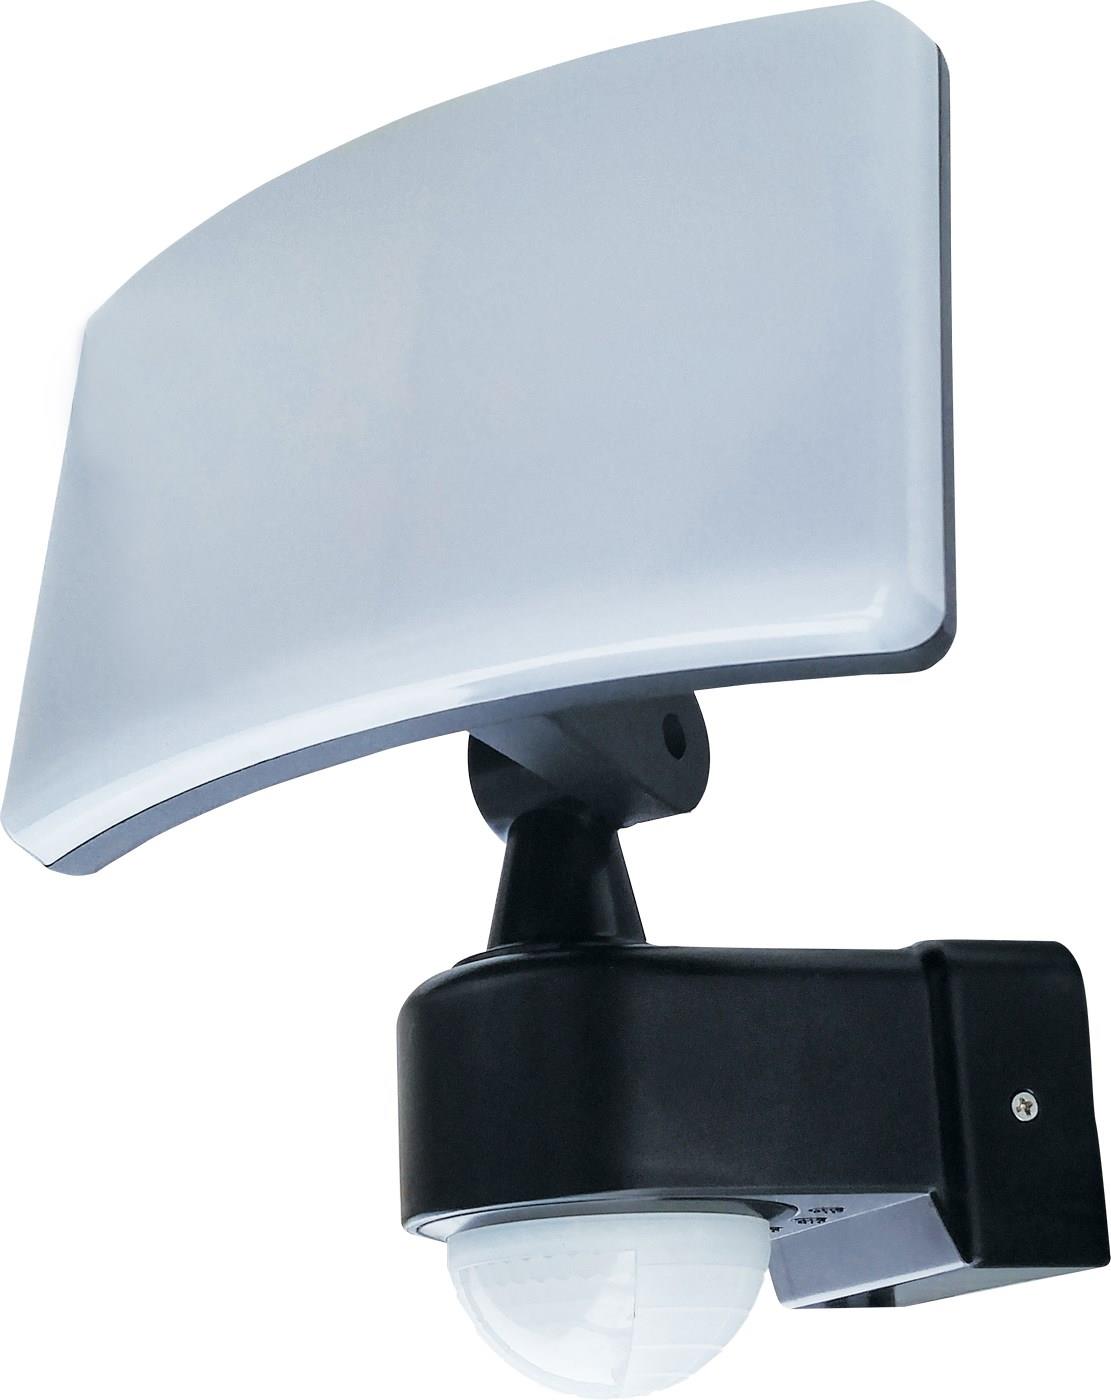 LED pøisazené nástìnné svítidlo s èidlem ATLAS 30W PIR NW, 4000K, 2100lm, IP65, Greenlux GXPS125 - zvìtšit obrázek